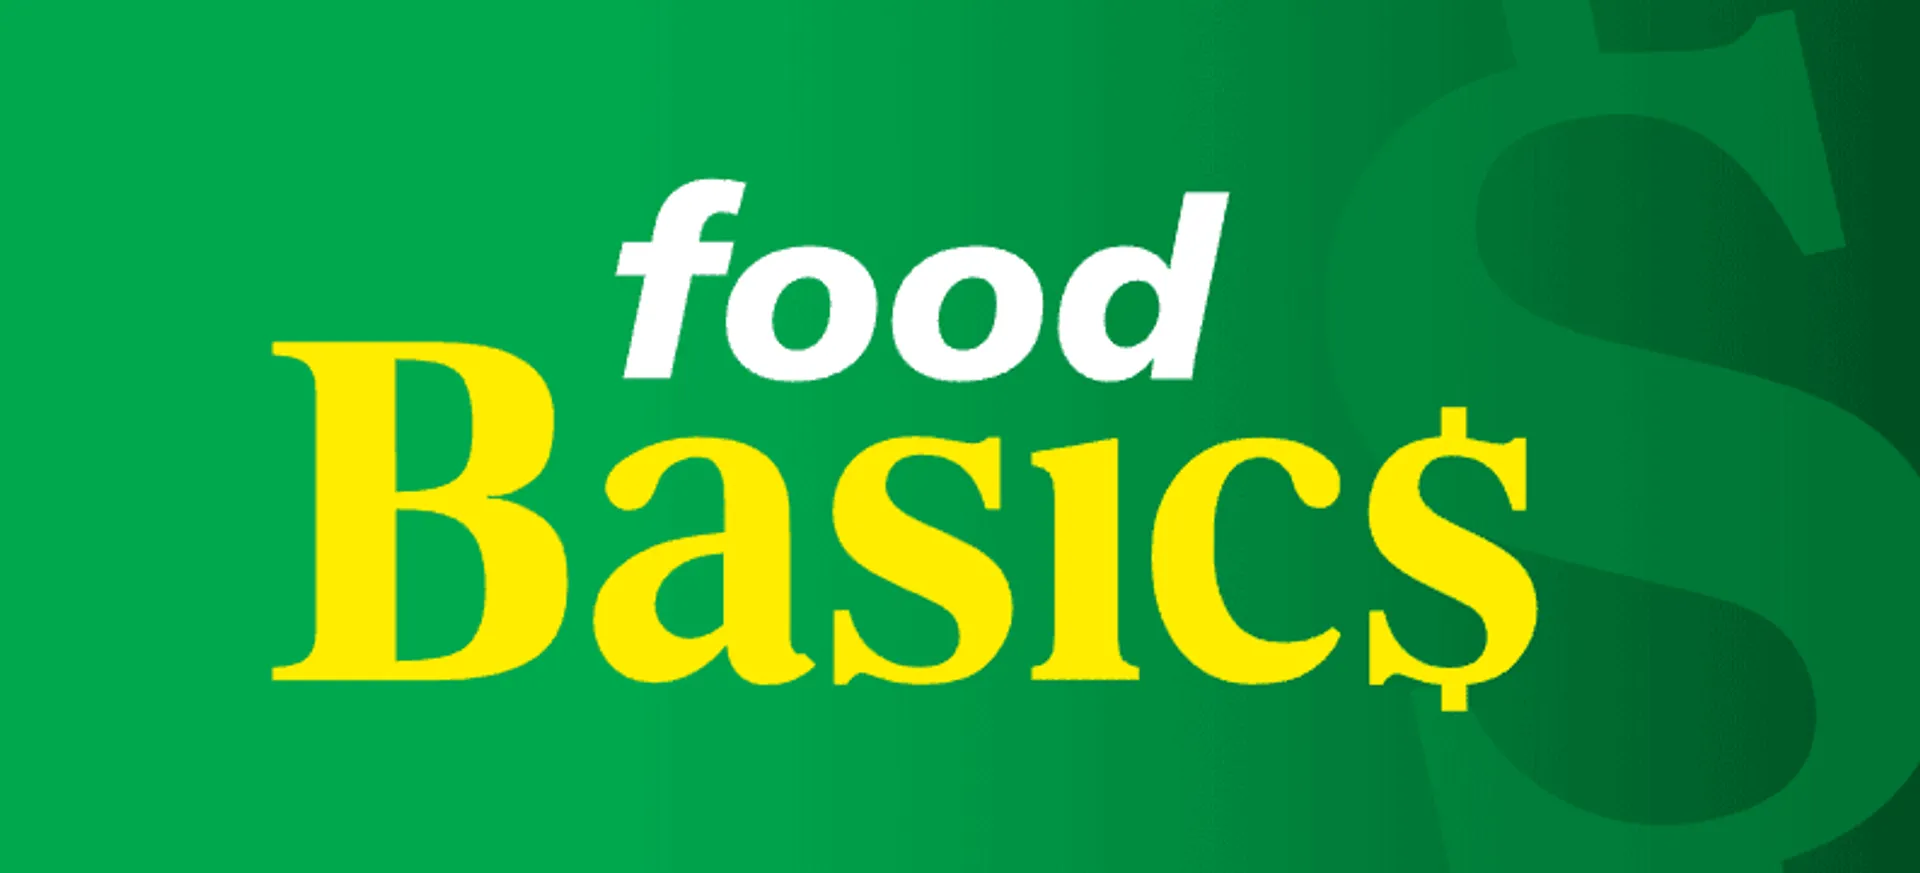 FOOS BASICS logo. Current weekly ad